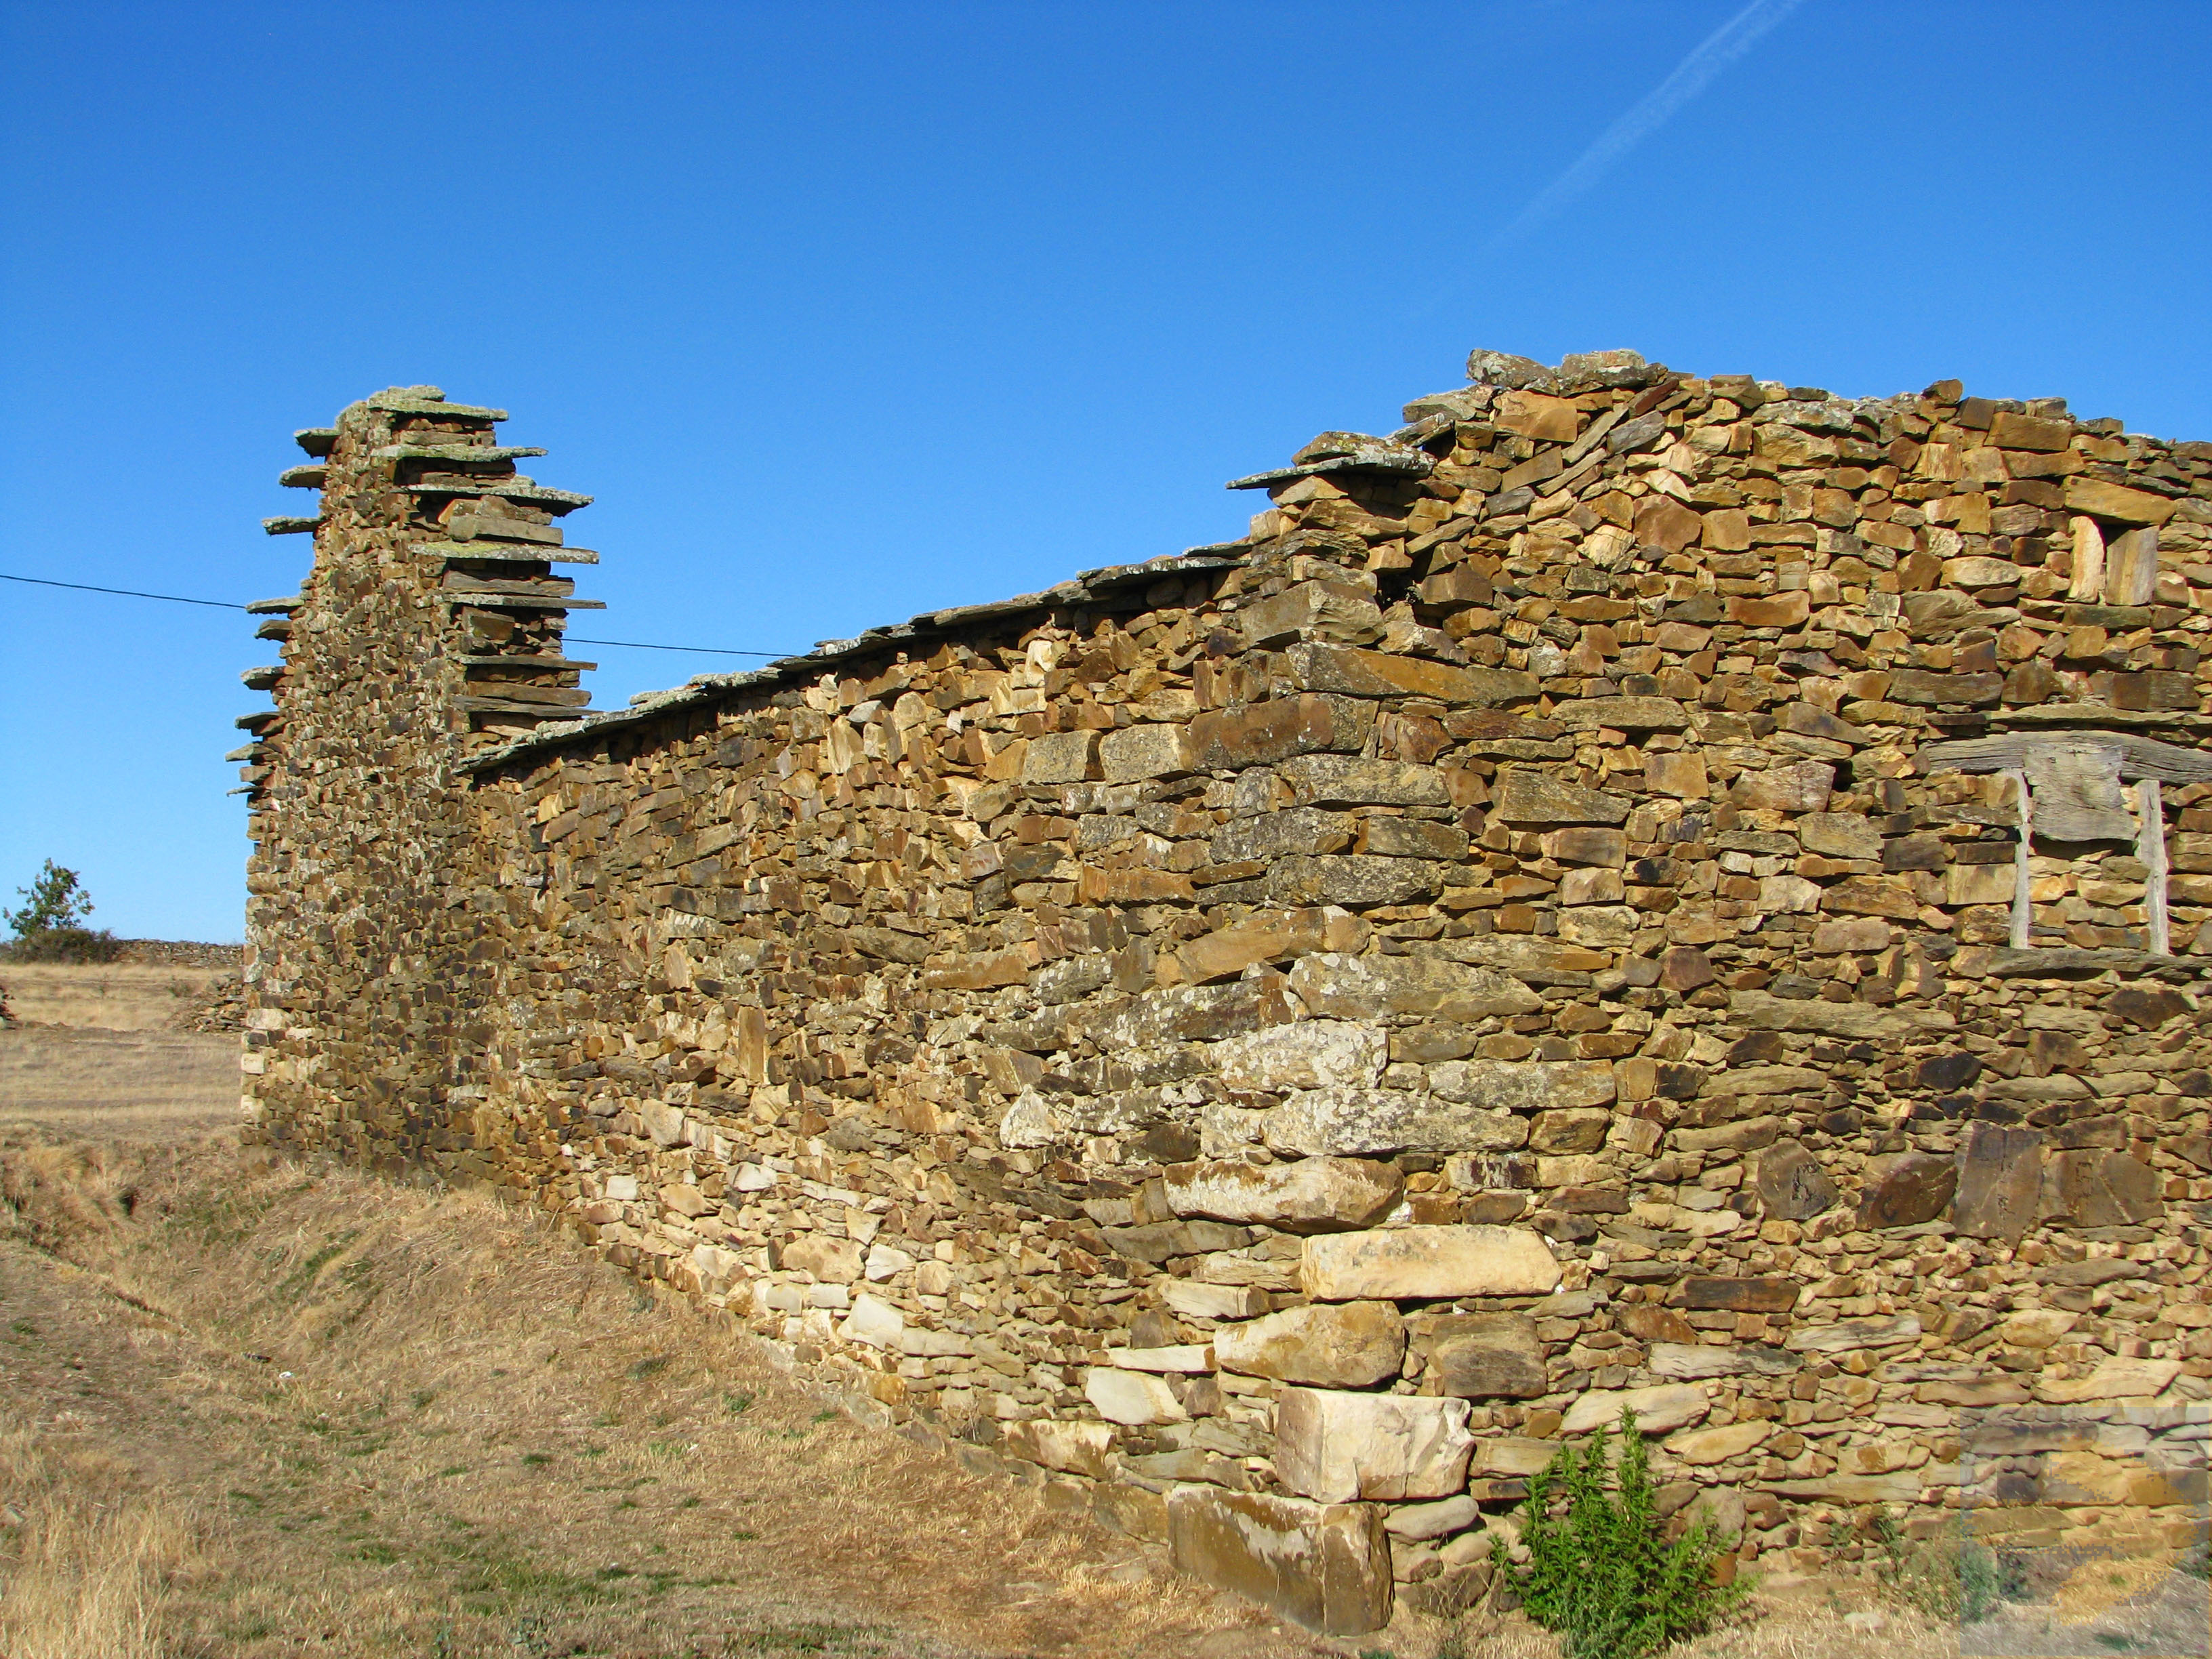 The walls - Santa Catalina de Somoza